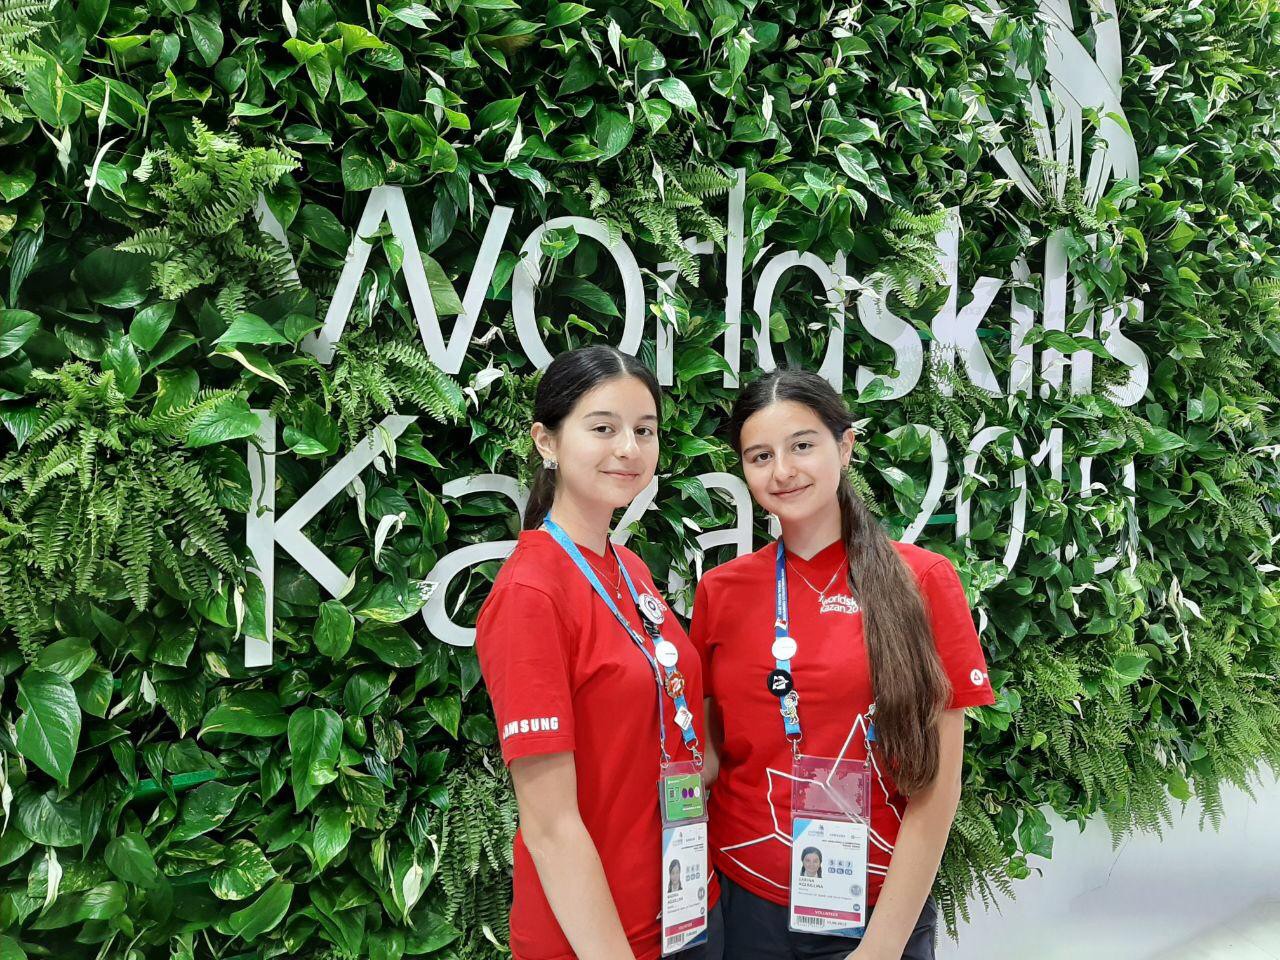   WorldSkills-2019  